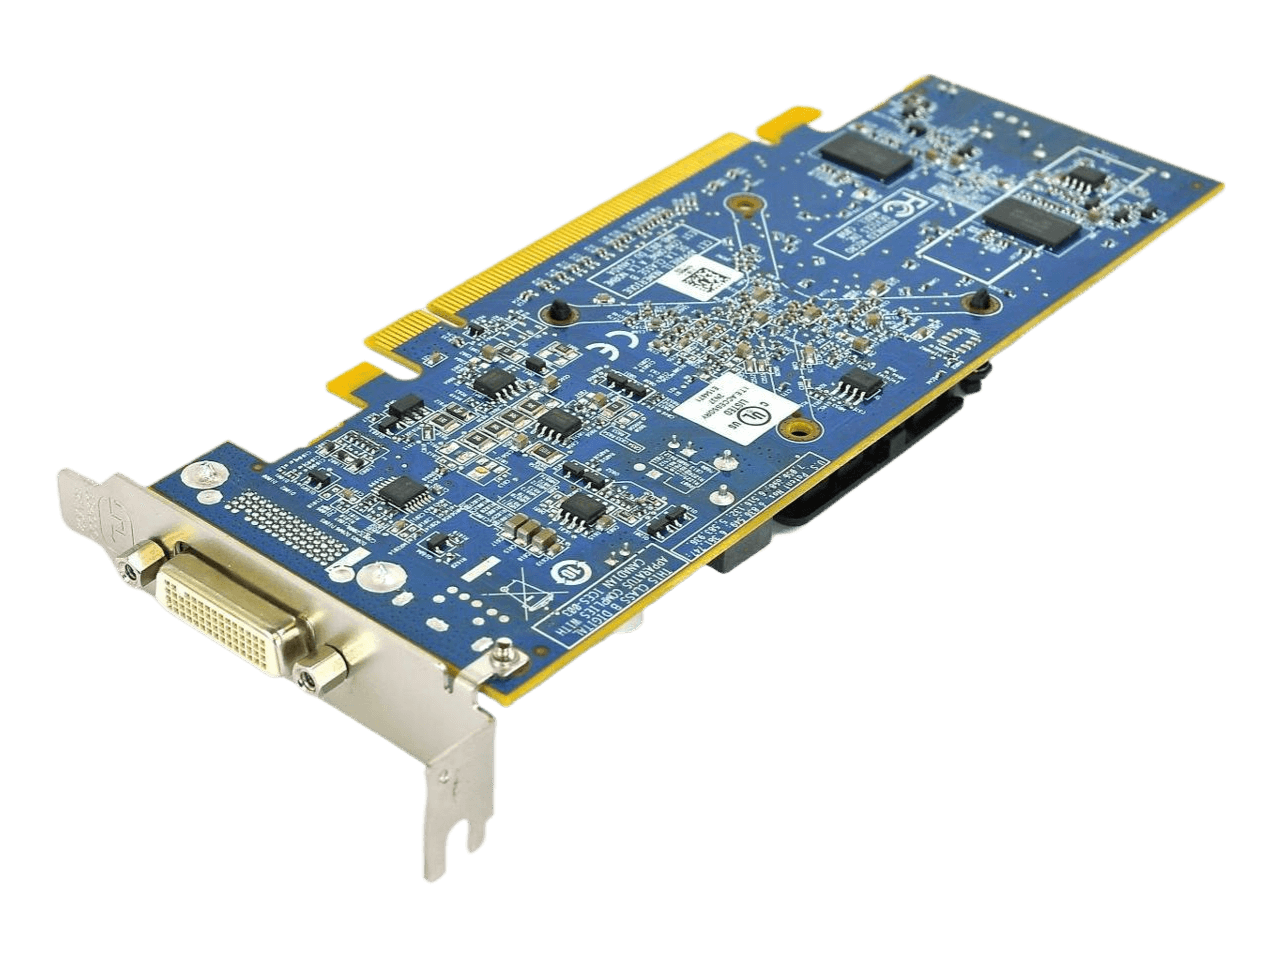 HP ATI Radeon HD 6350 512MB PCIE x16 Video Card with VGA 637995-001